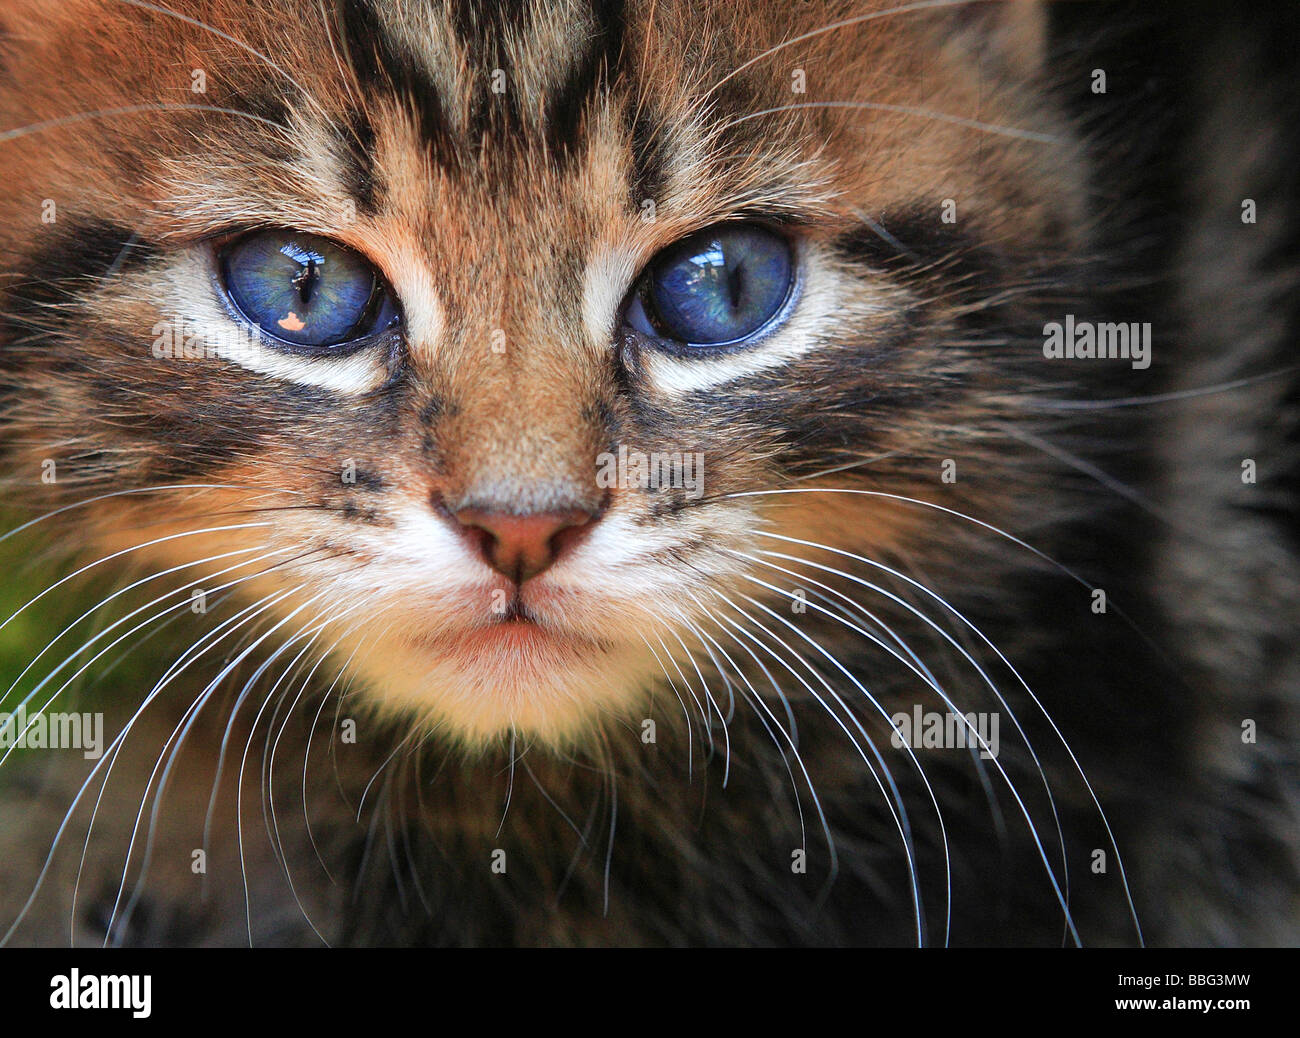 Cats, Kitten Stock Photo